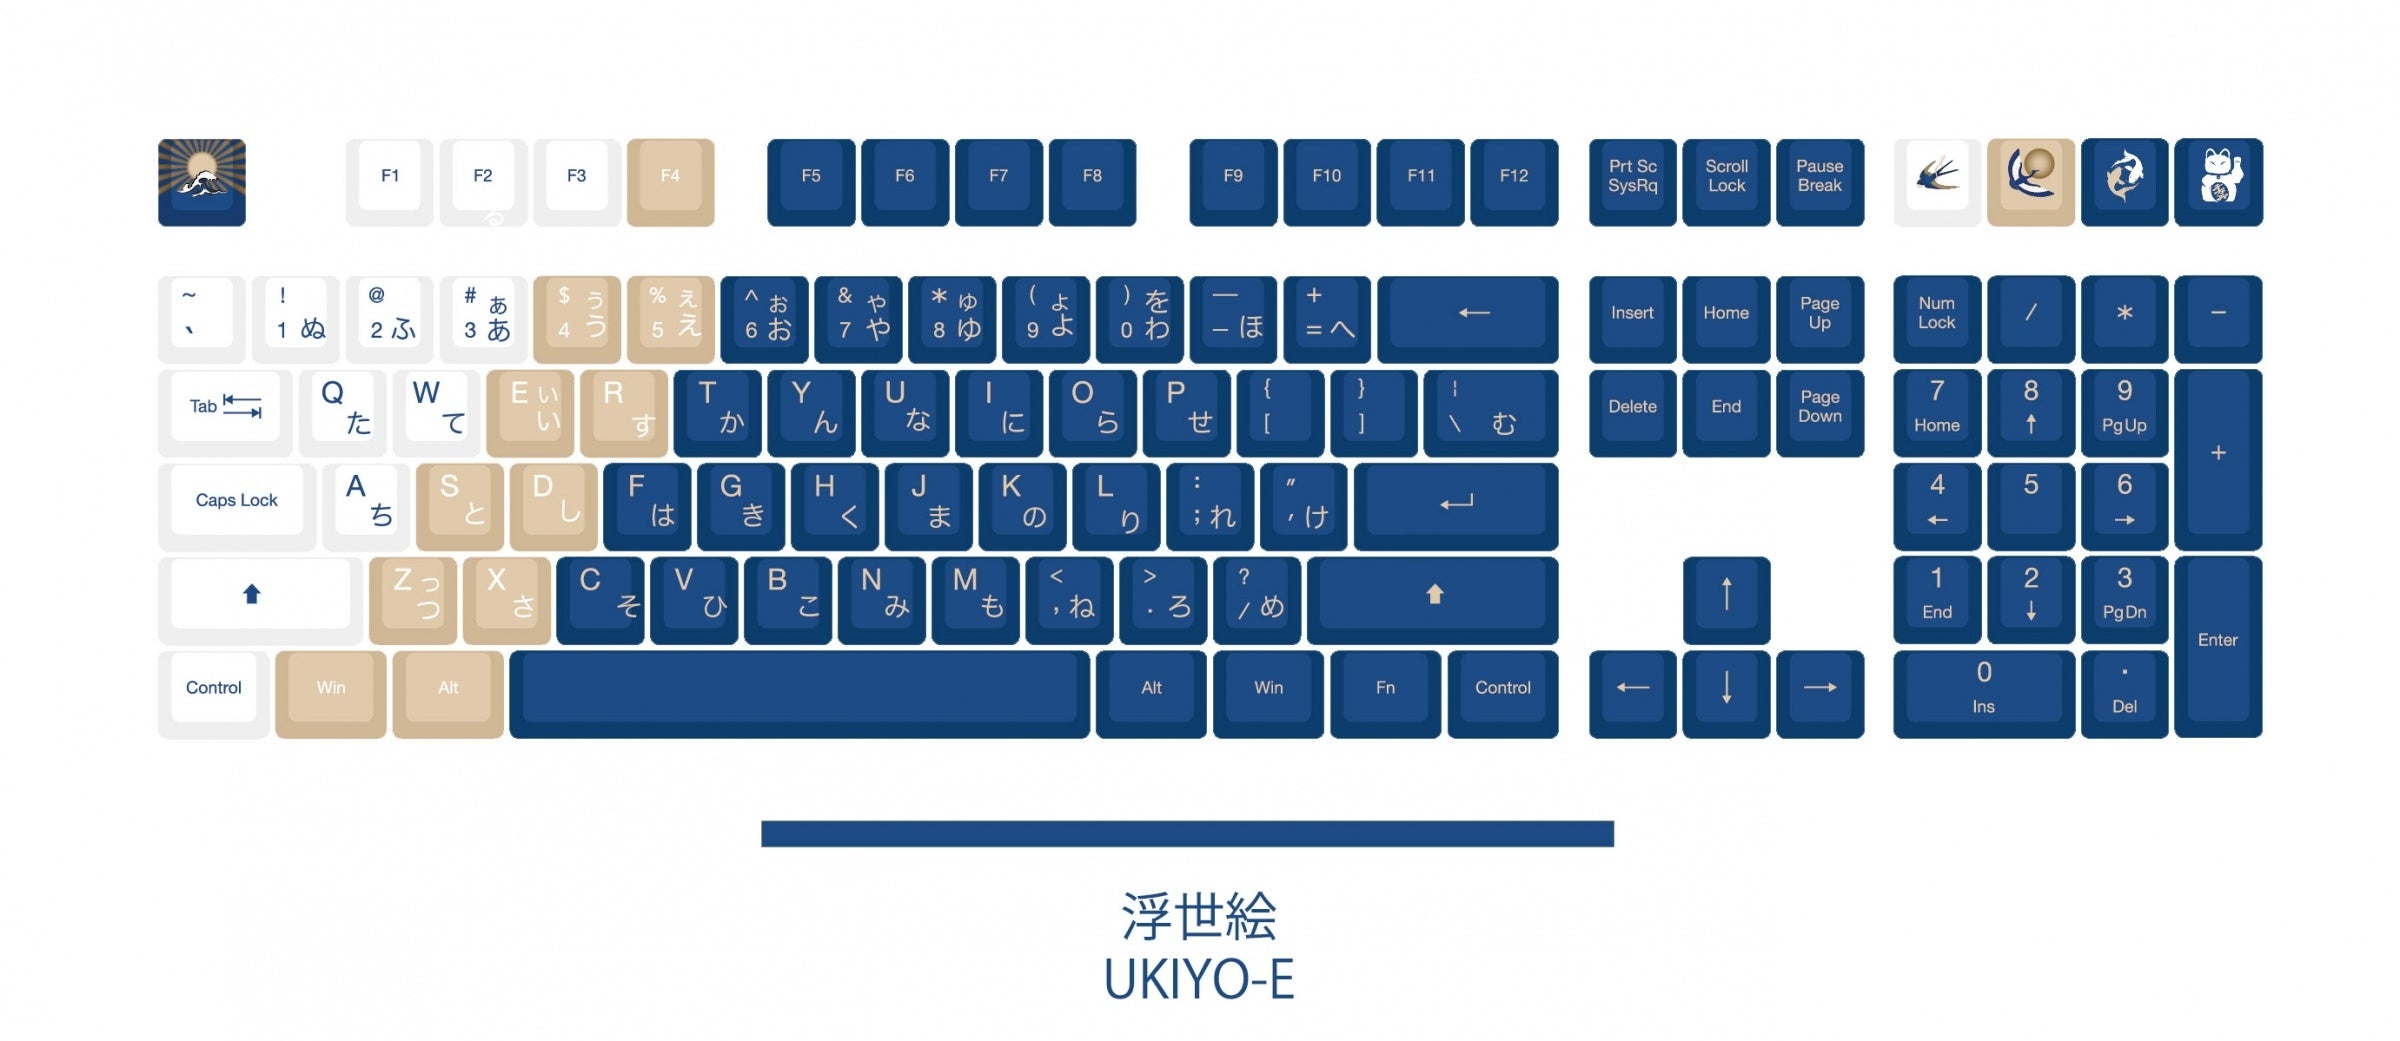 Traitors Ukiyo-E Keycap Set Dye Sub PBT Cherry Profile MKTLQFFRVK |0|